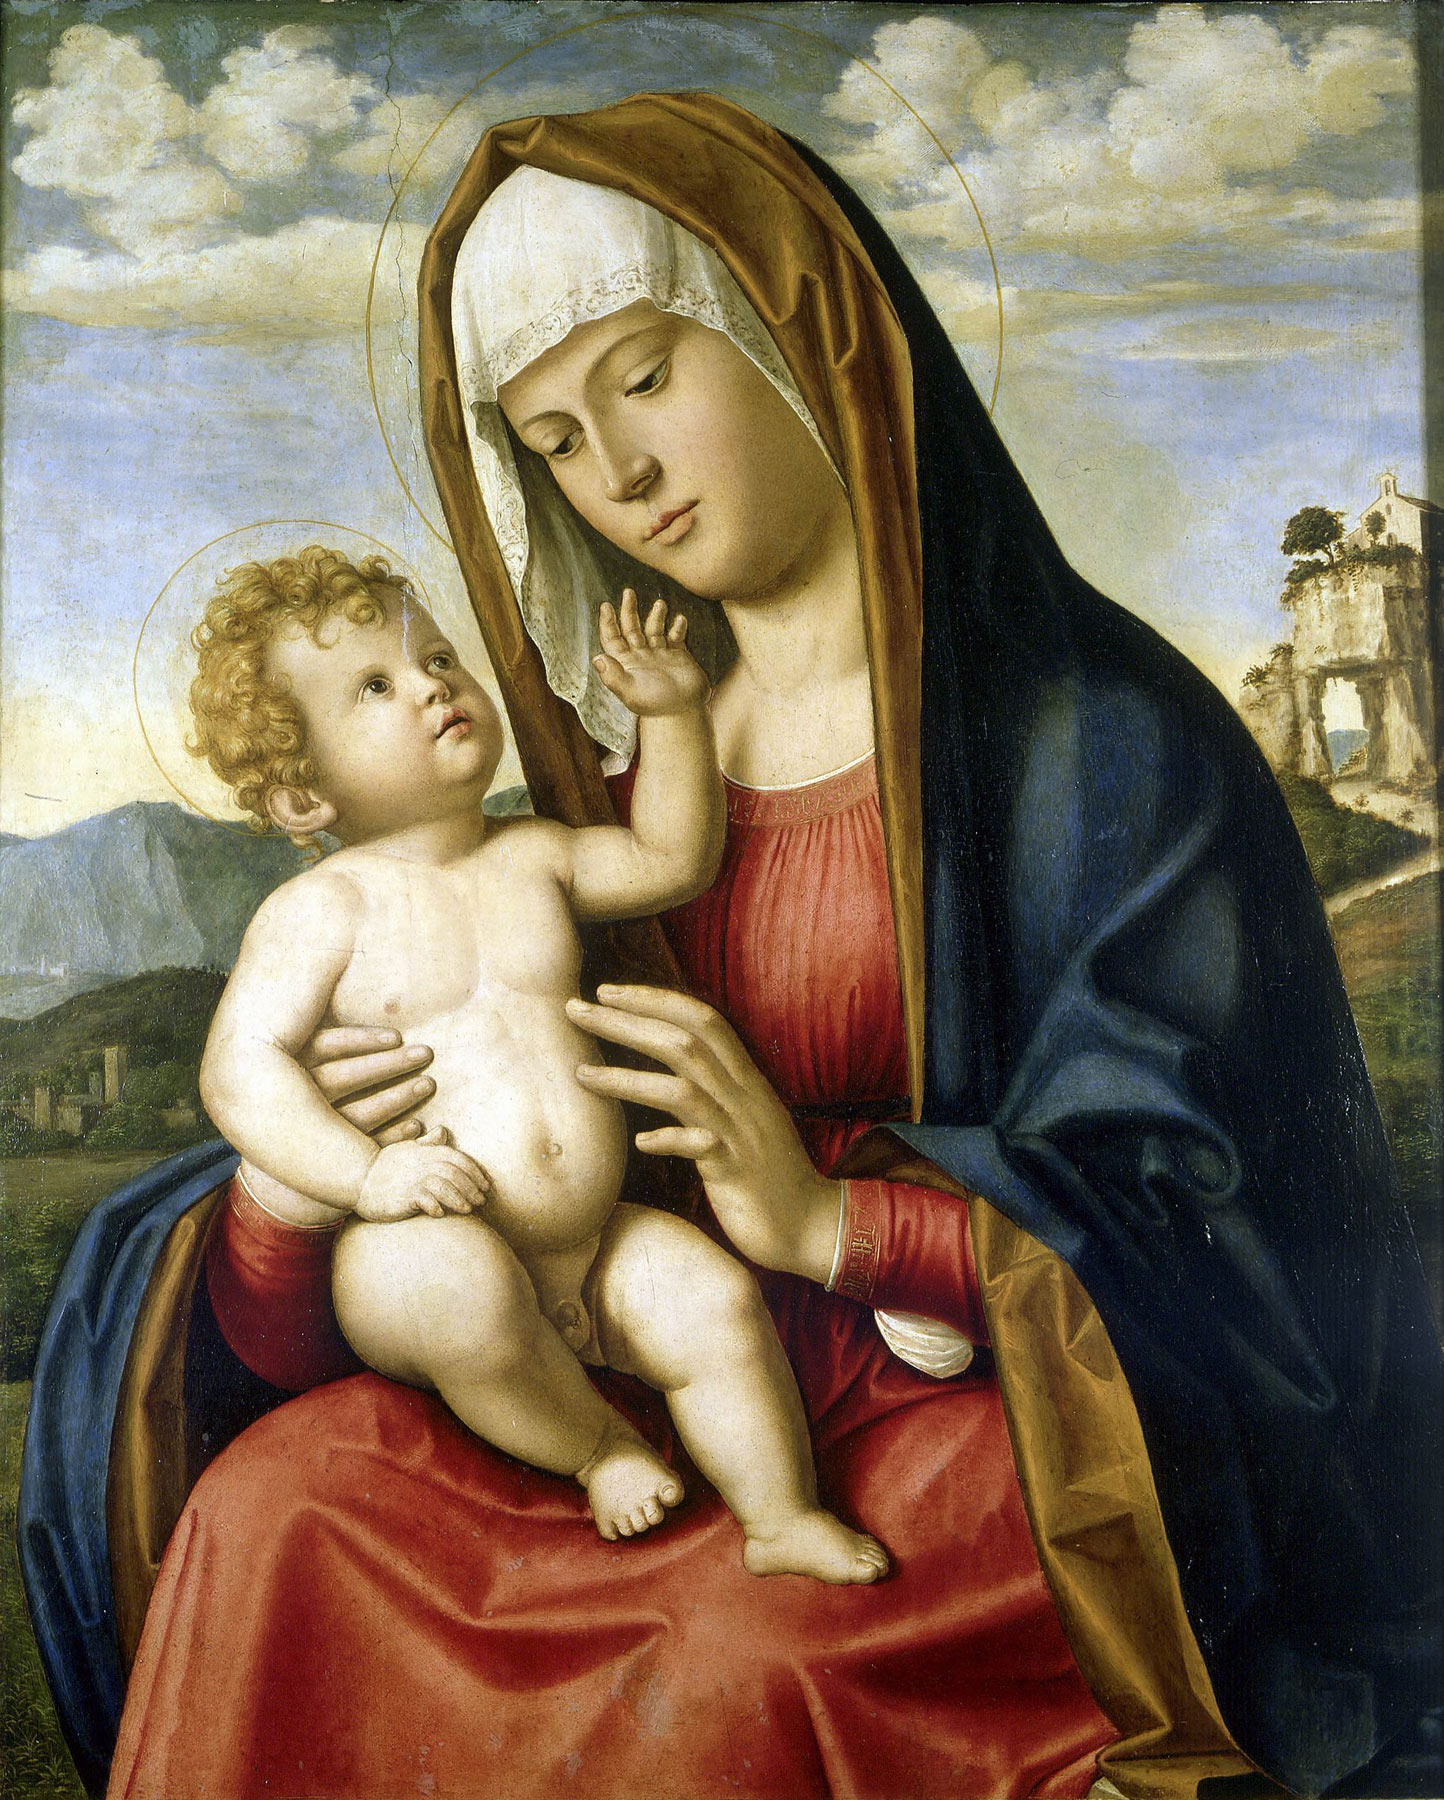 Cima da Conegliano, Madonna col bambino (1495-97; olio su tavola, 71 x 55 cm; Parigi, Petit Palais)